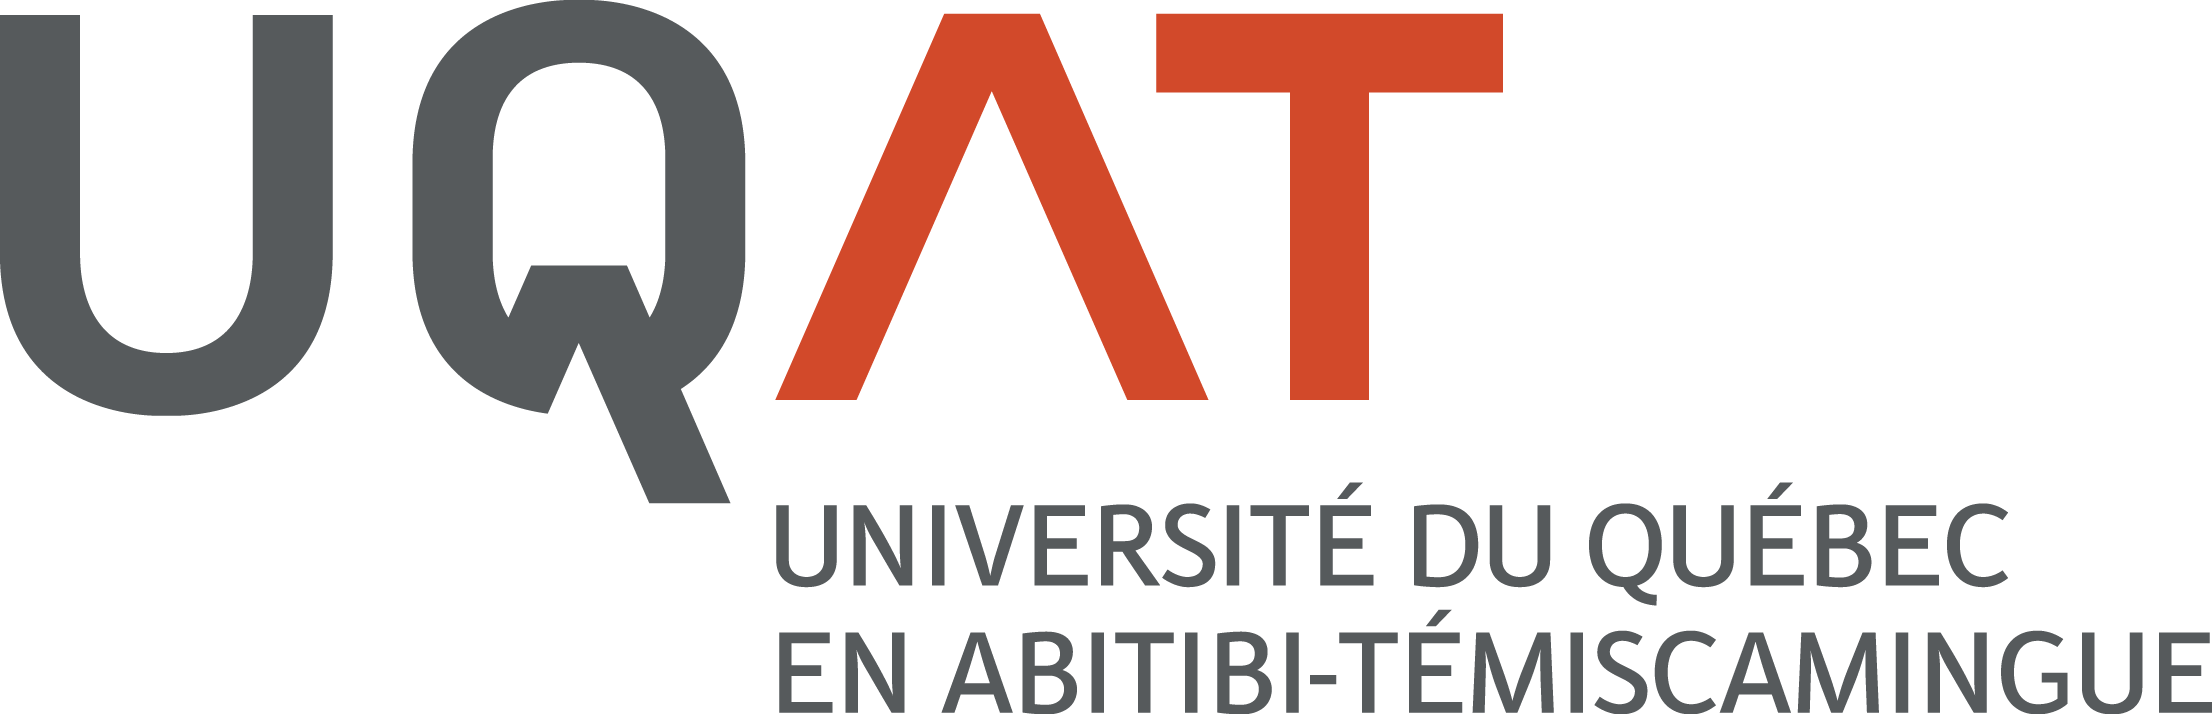 Logo de l'UQAT